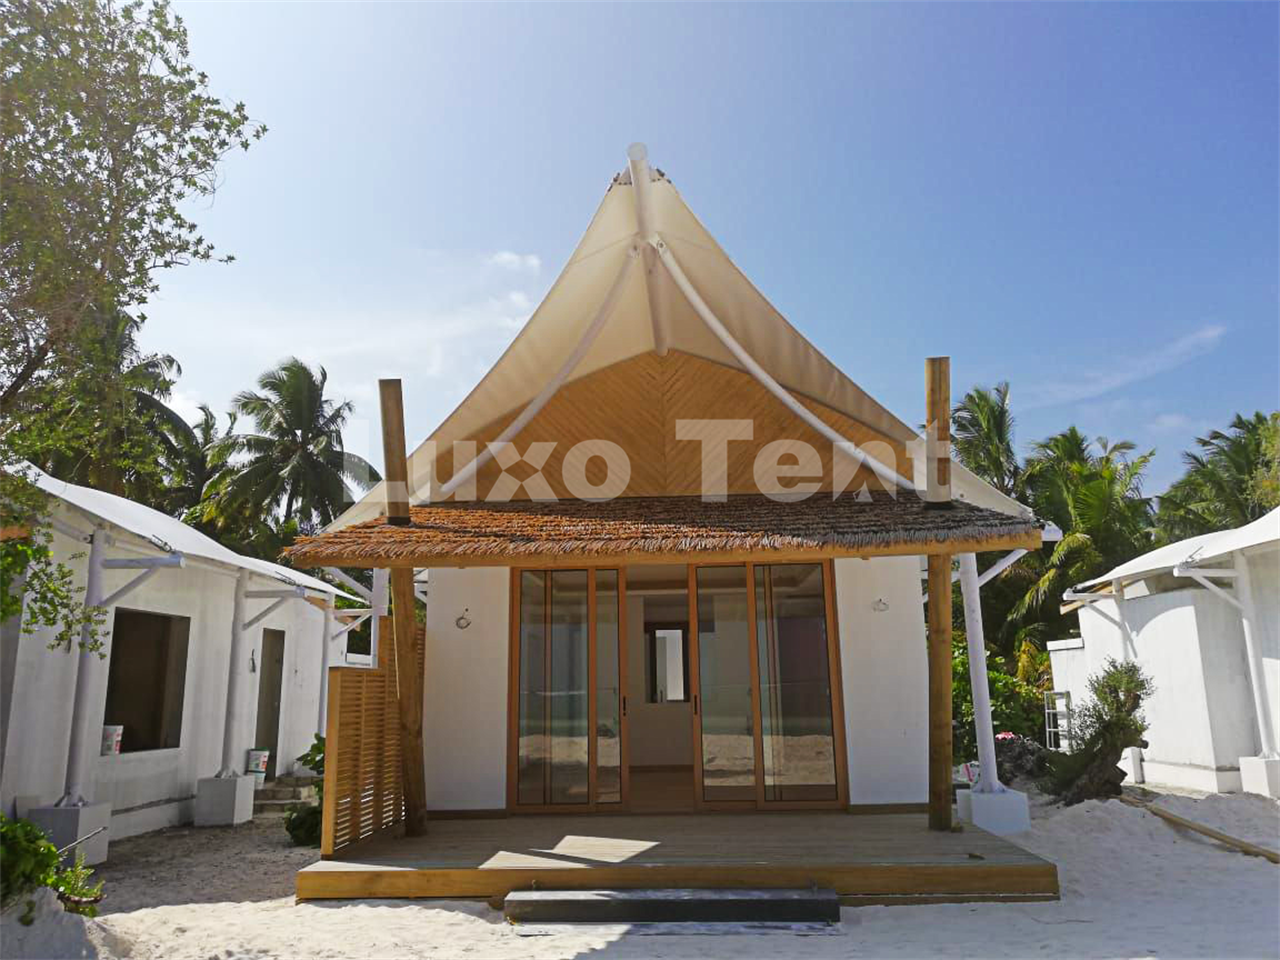 Hotel per tende con struttura a membrana personalizzata alle Maldive1